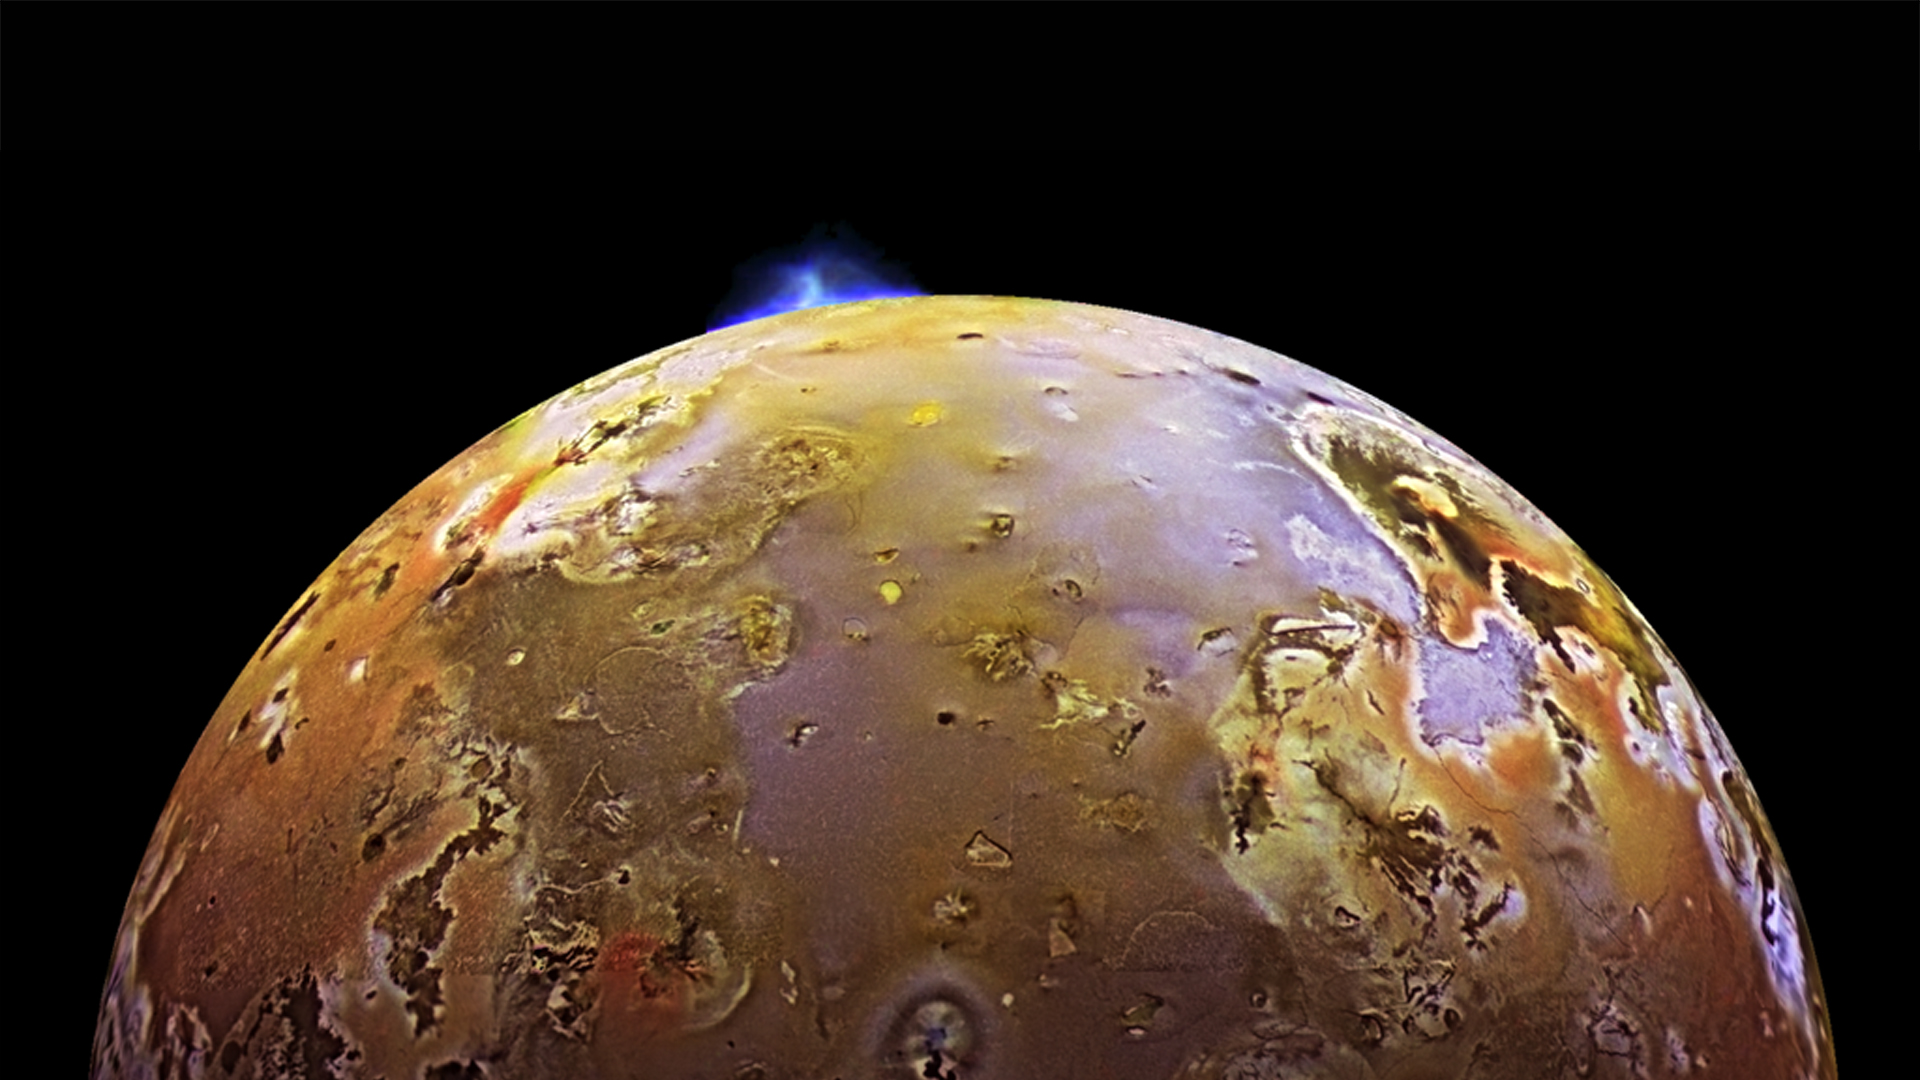 Magnifique panache au-dessus de Io photographié par la sonde Galileo en 1997. © Nasa, JPL, DLR